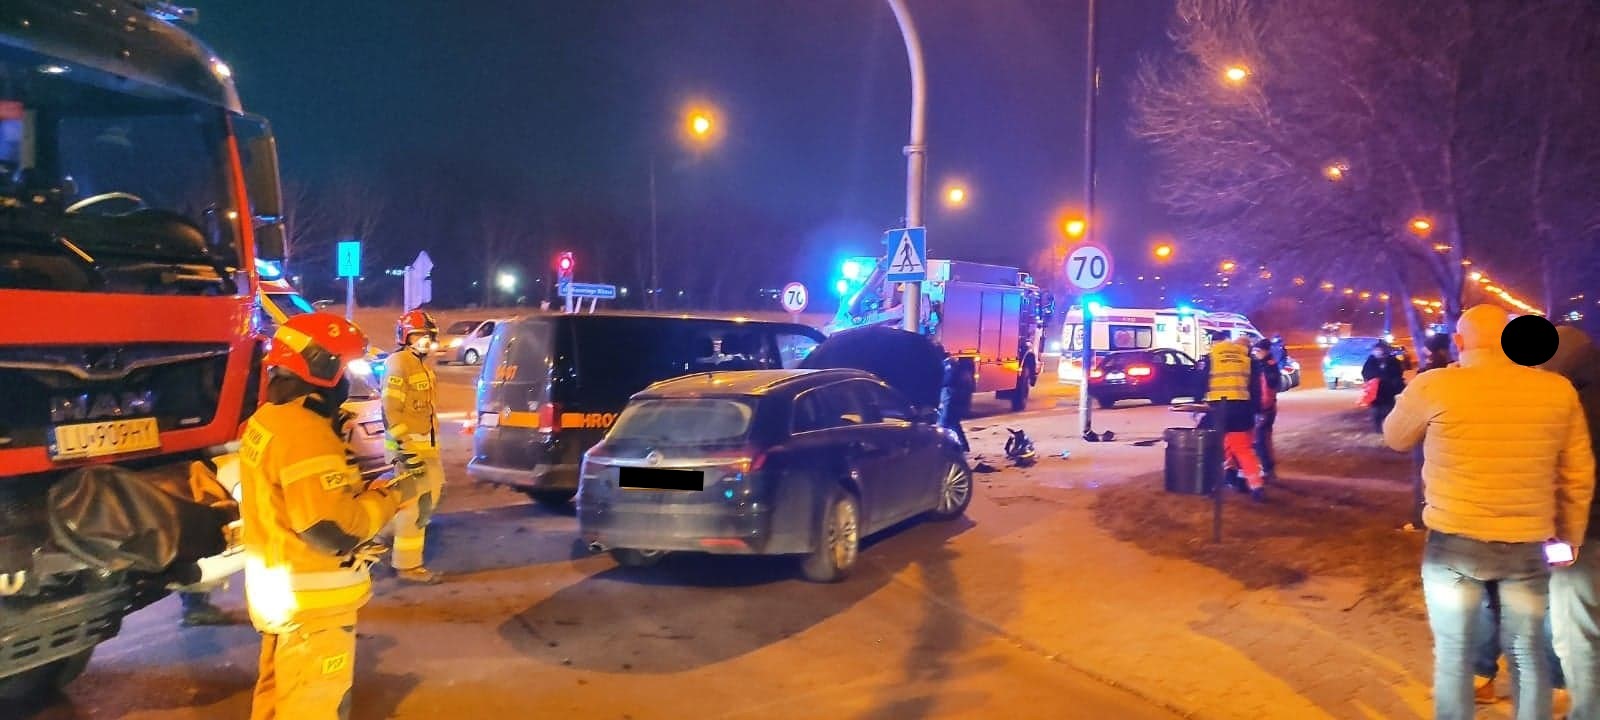 Zastęp straży oraz ambulans na miejscu wypadku